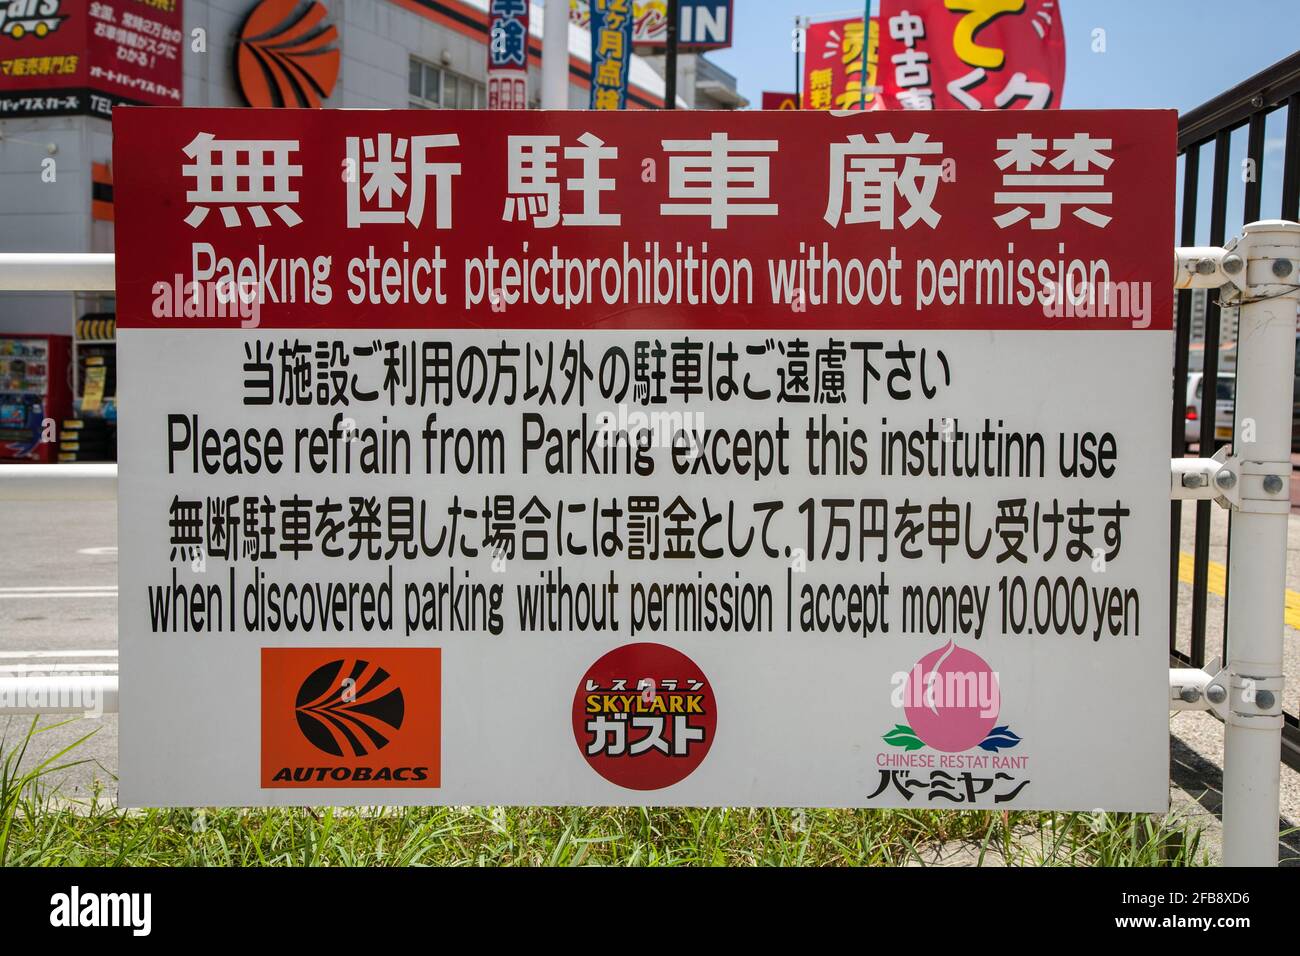 Rechtschreibfehler und falsche grammatische englische Wortverwendung verloren in der Übersetzung der japanischen öffentlichen Parkplatzanzeige, Naha, Okinawa, Japan Stockfoto